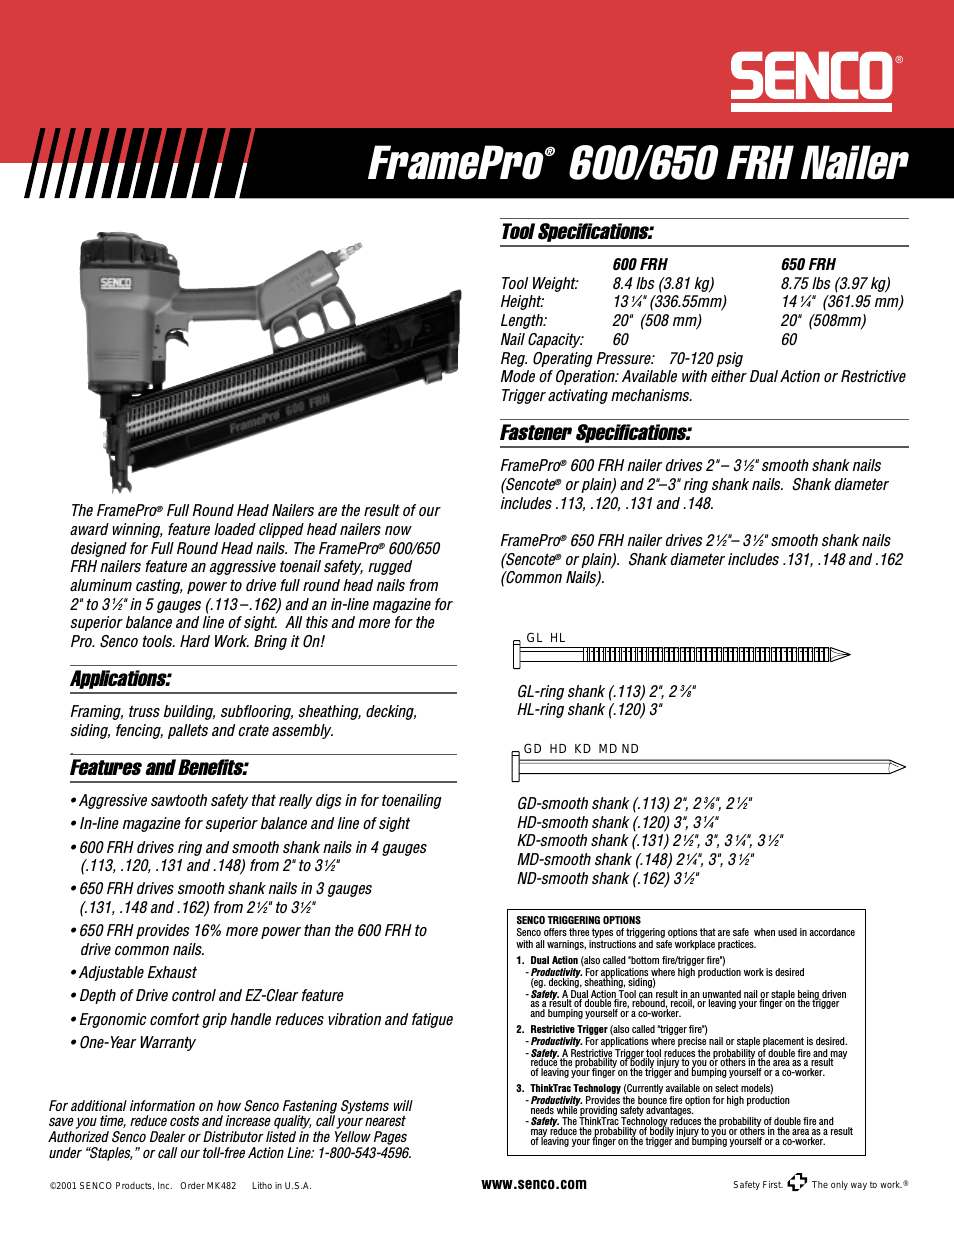 FramePro 650 FRH